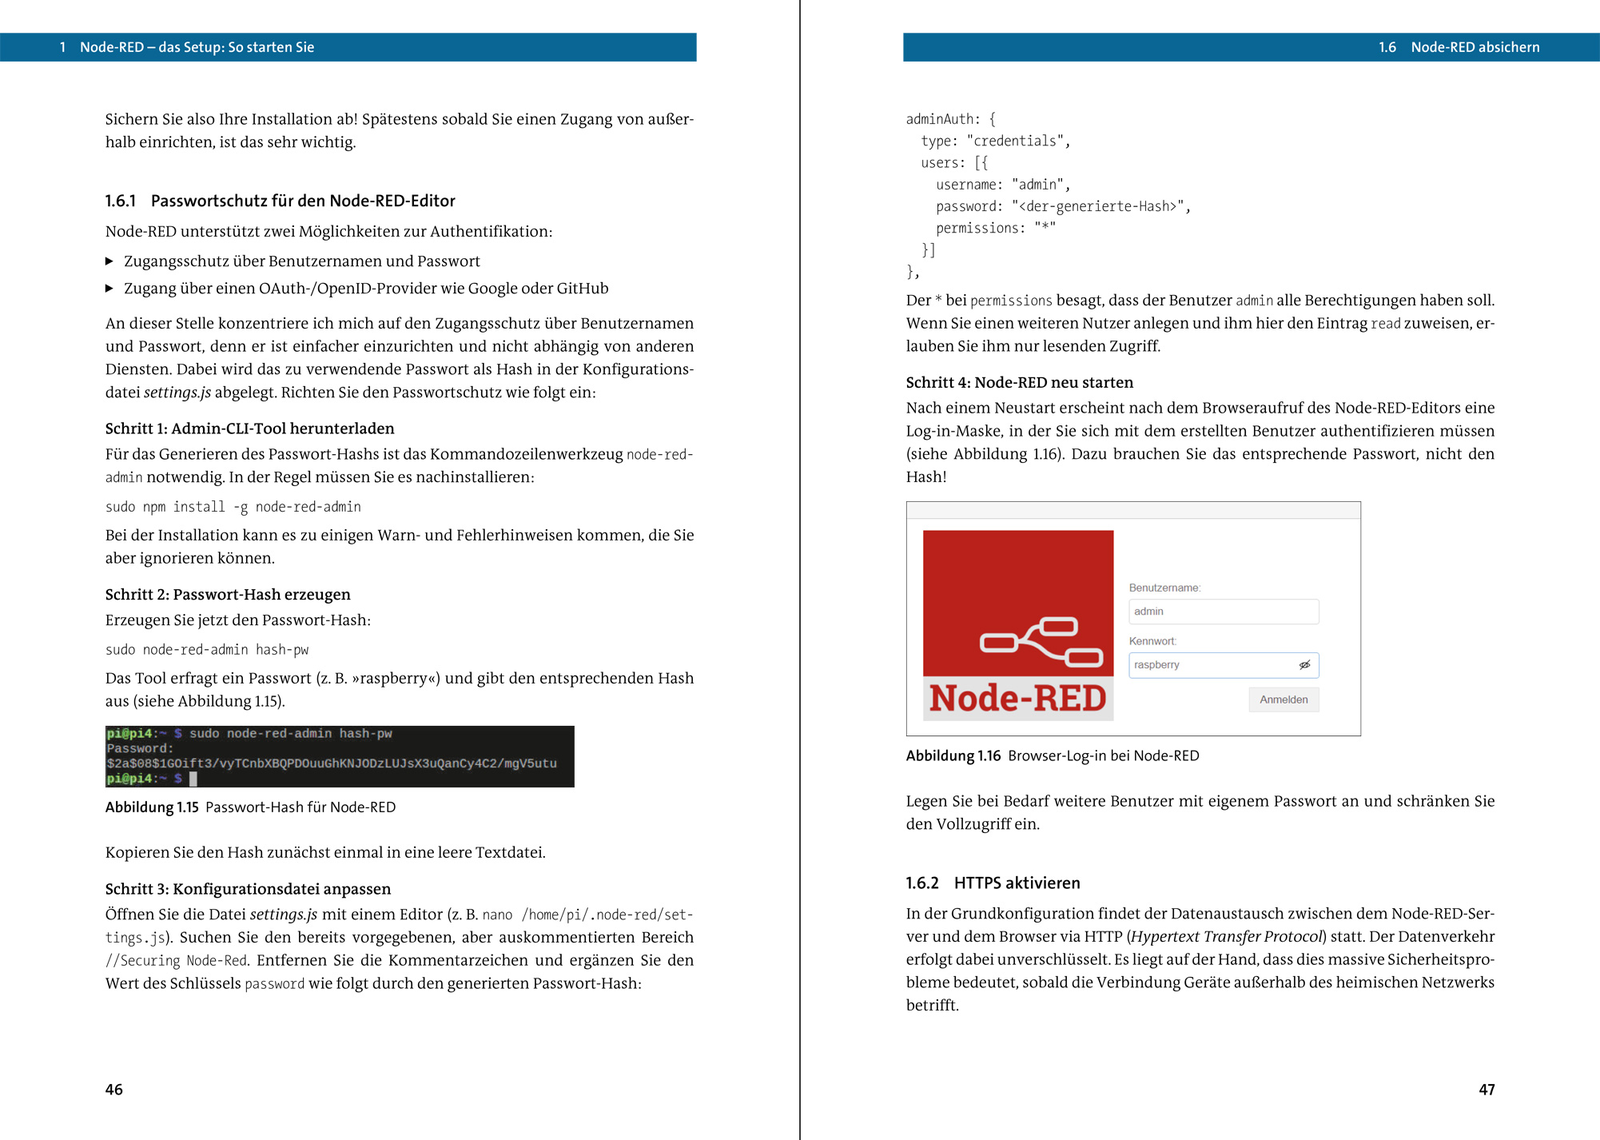 Node-Red - Das umfassende Handbuch (3. Auflage)